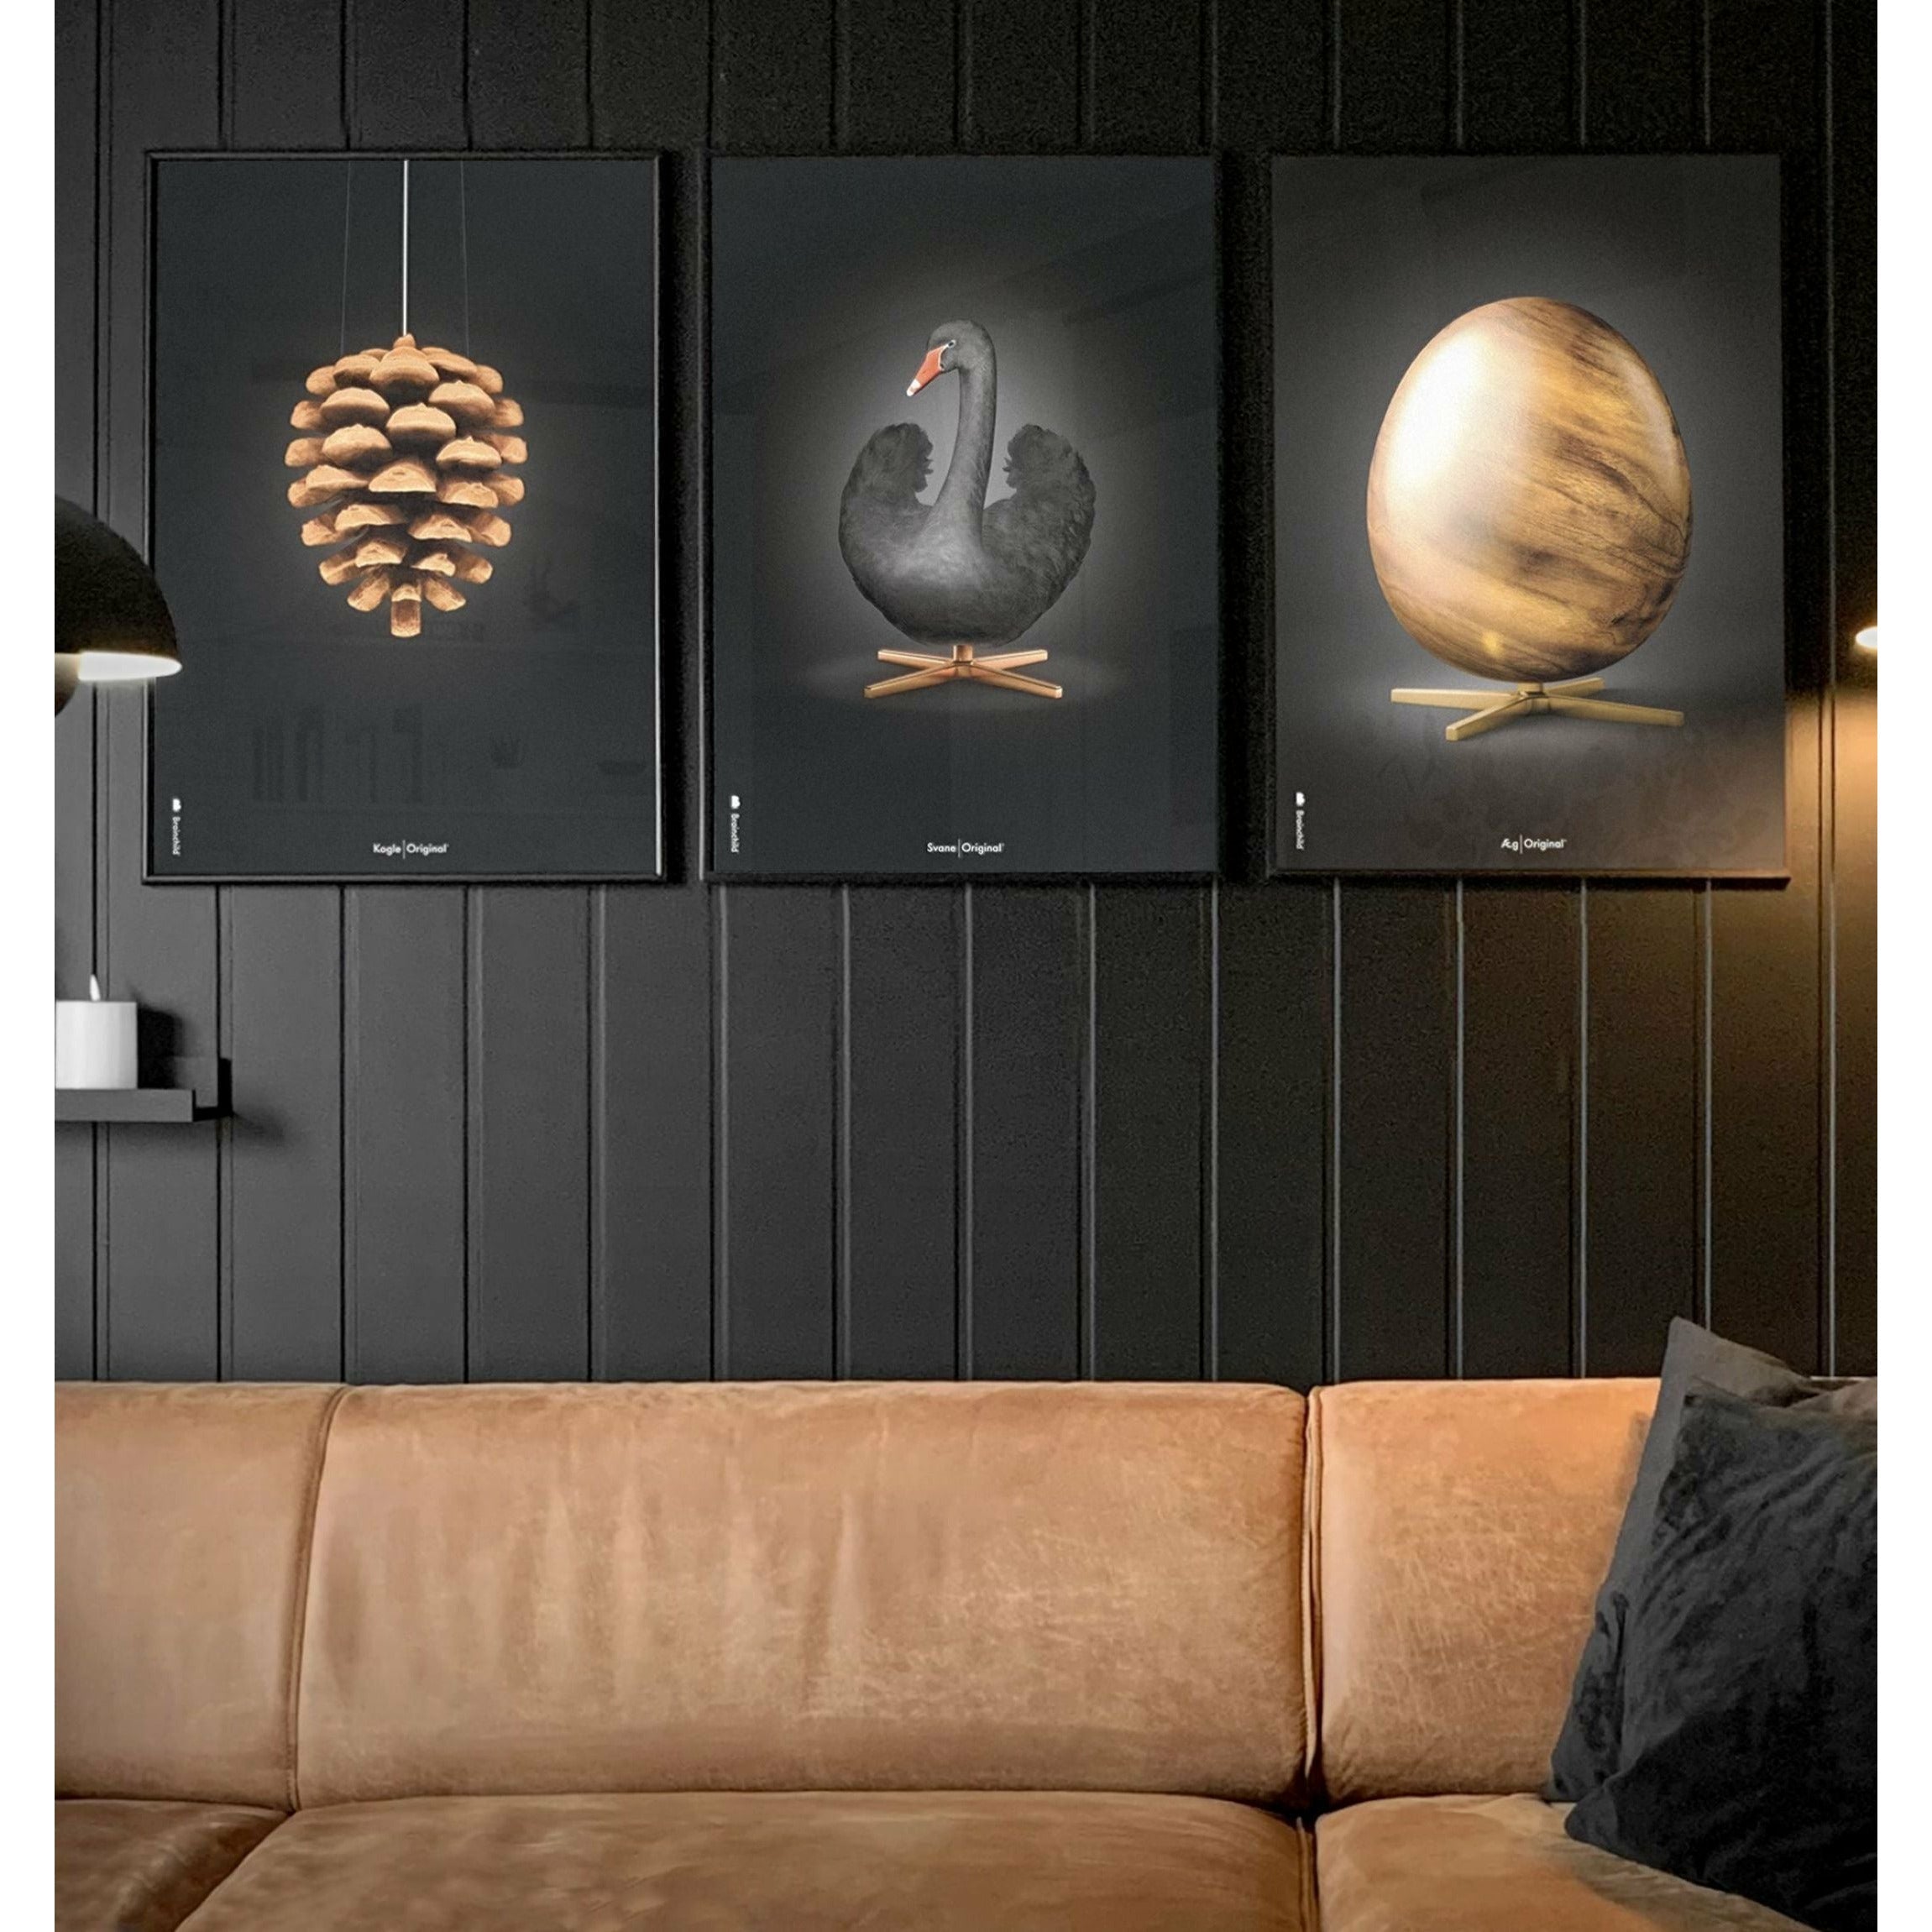 brainchild Pine Cone Classic Poster, frame in zwart gelakt hout 30x40 cm, zwarte achtergrond